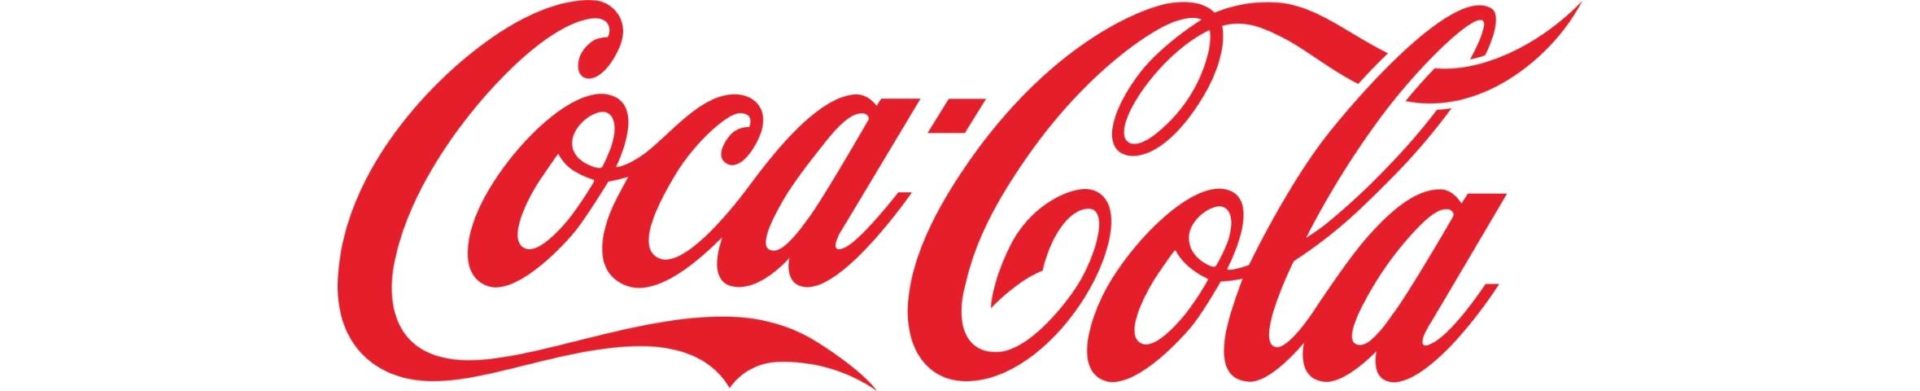 the Coca-Cola company logo